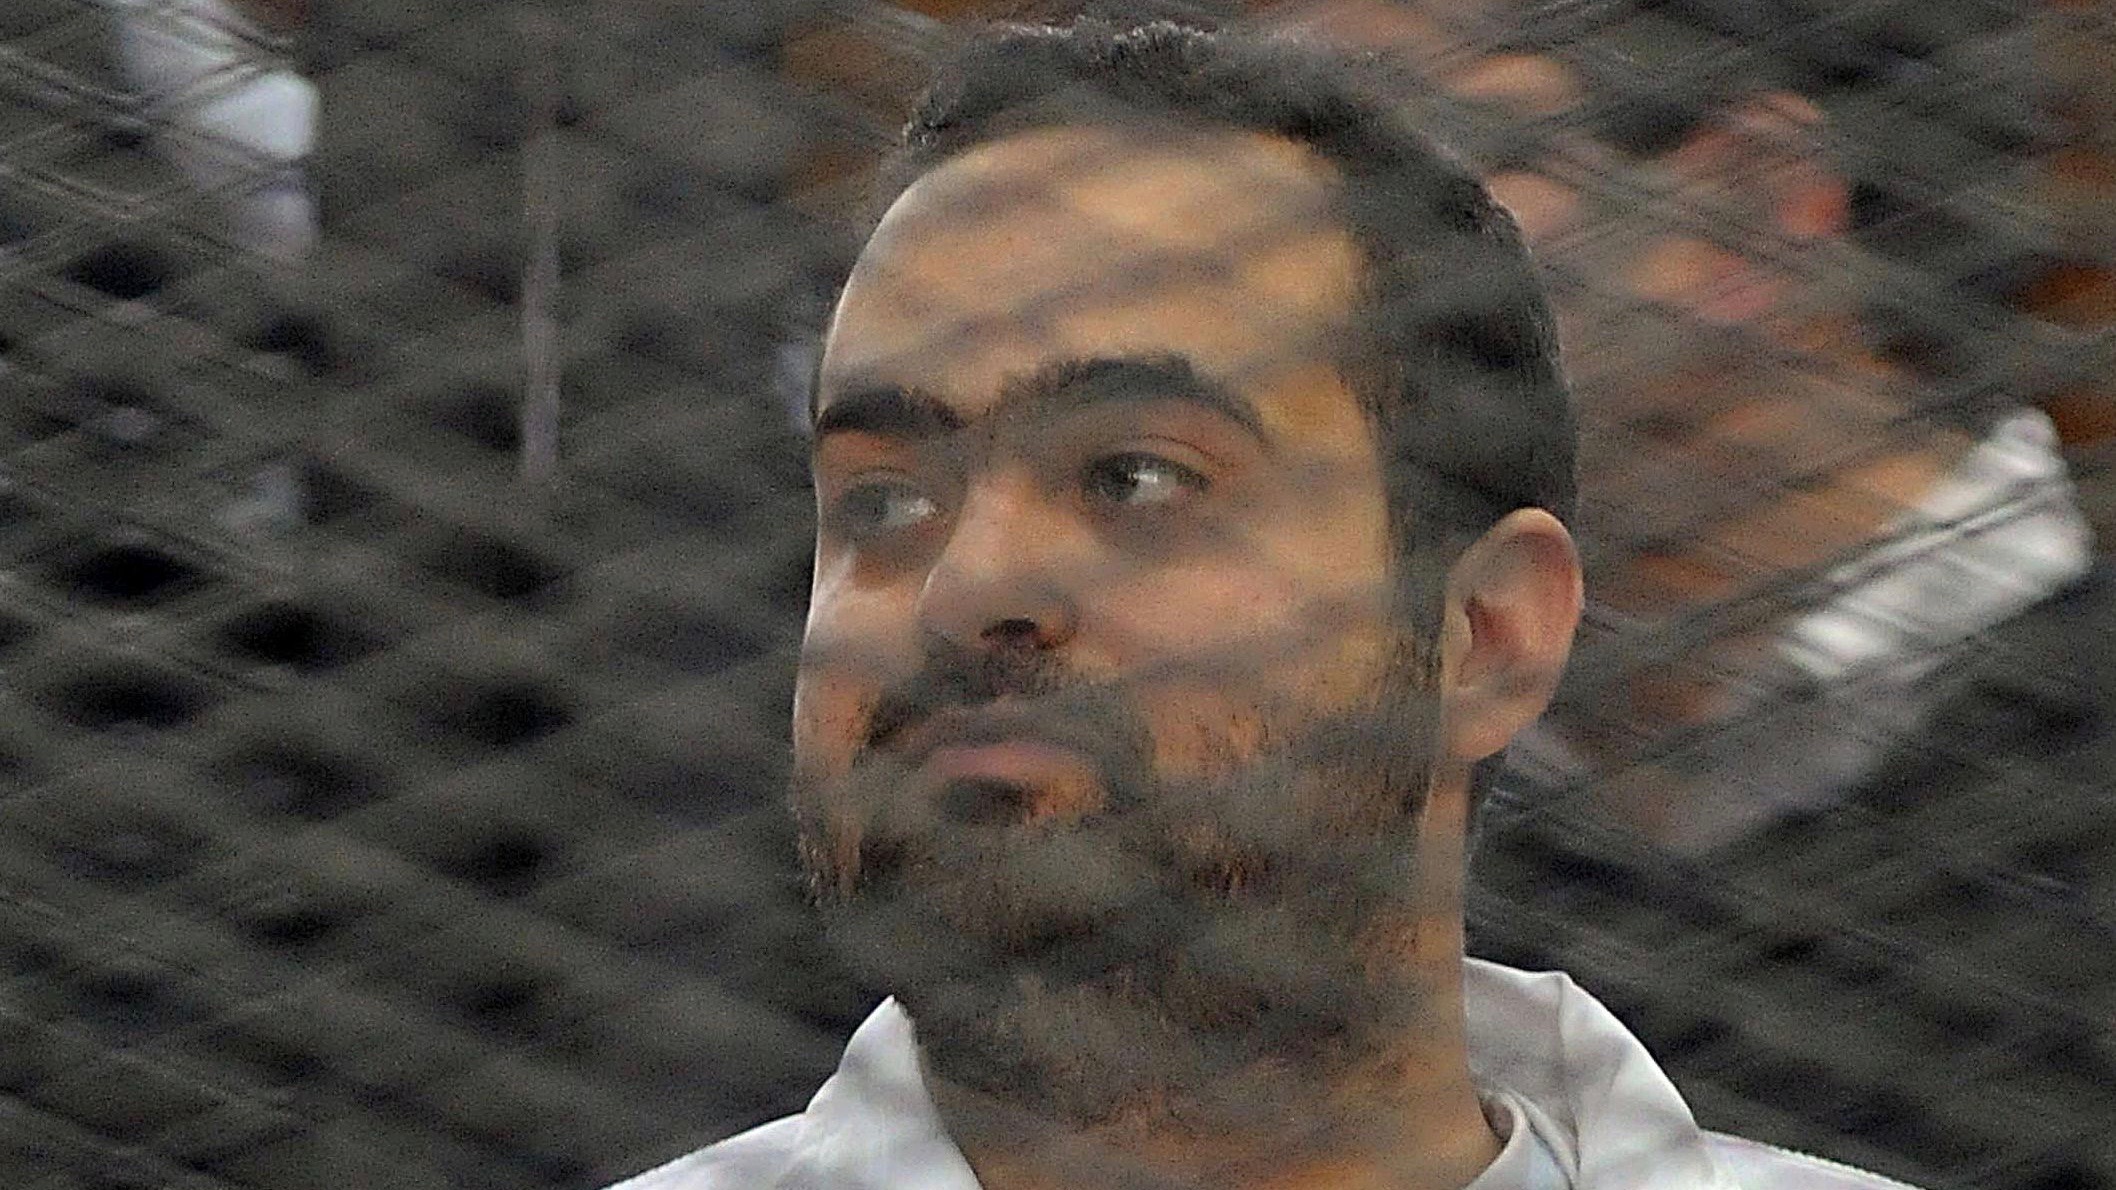 Egyptian activist Mohamed Adel